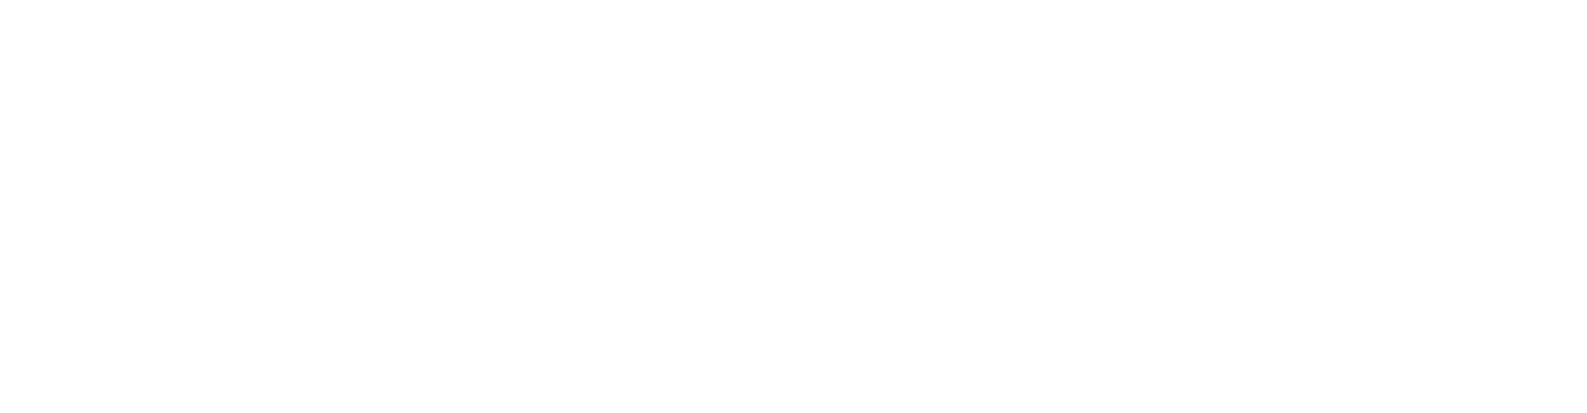 POSCO Logo groß für dunkle Hintergründe (transparentes PNG)